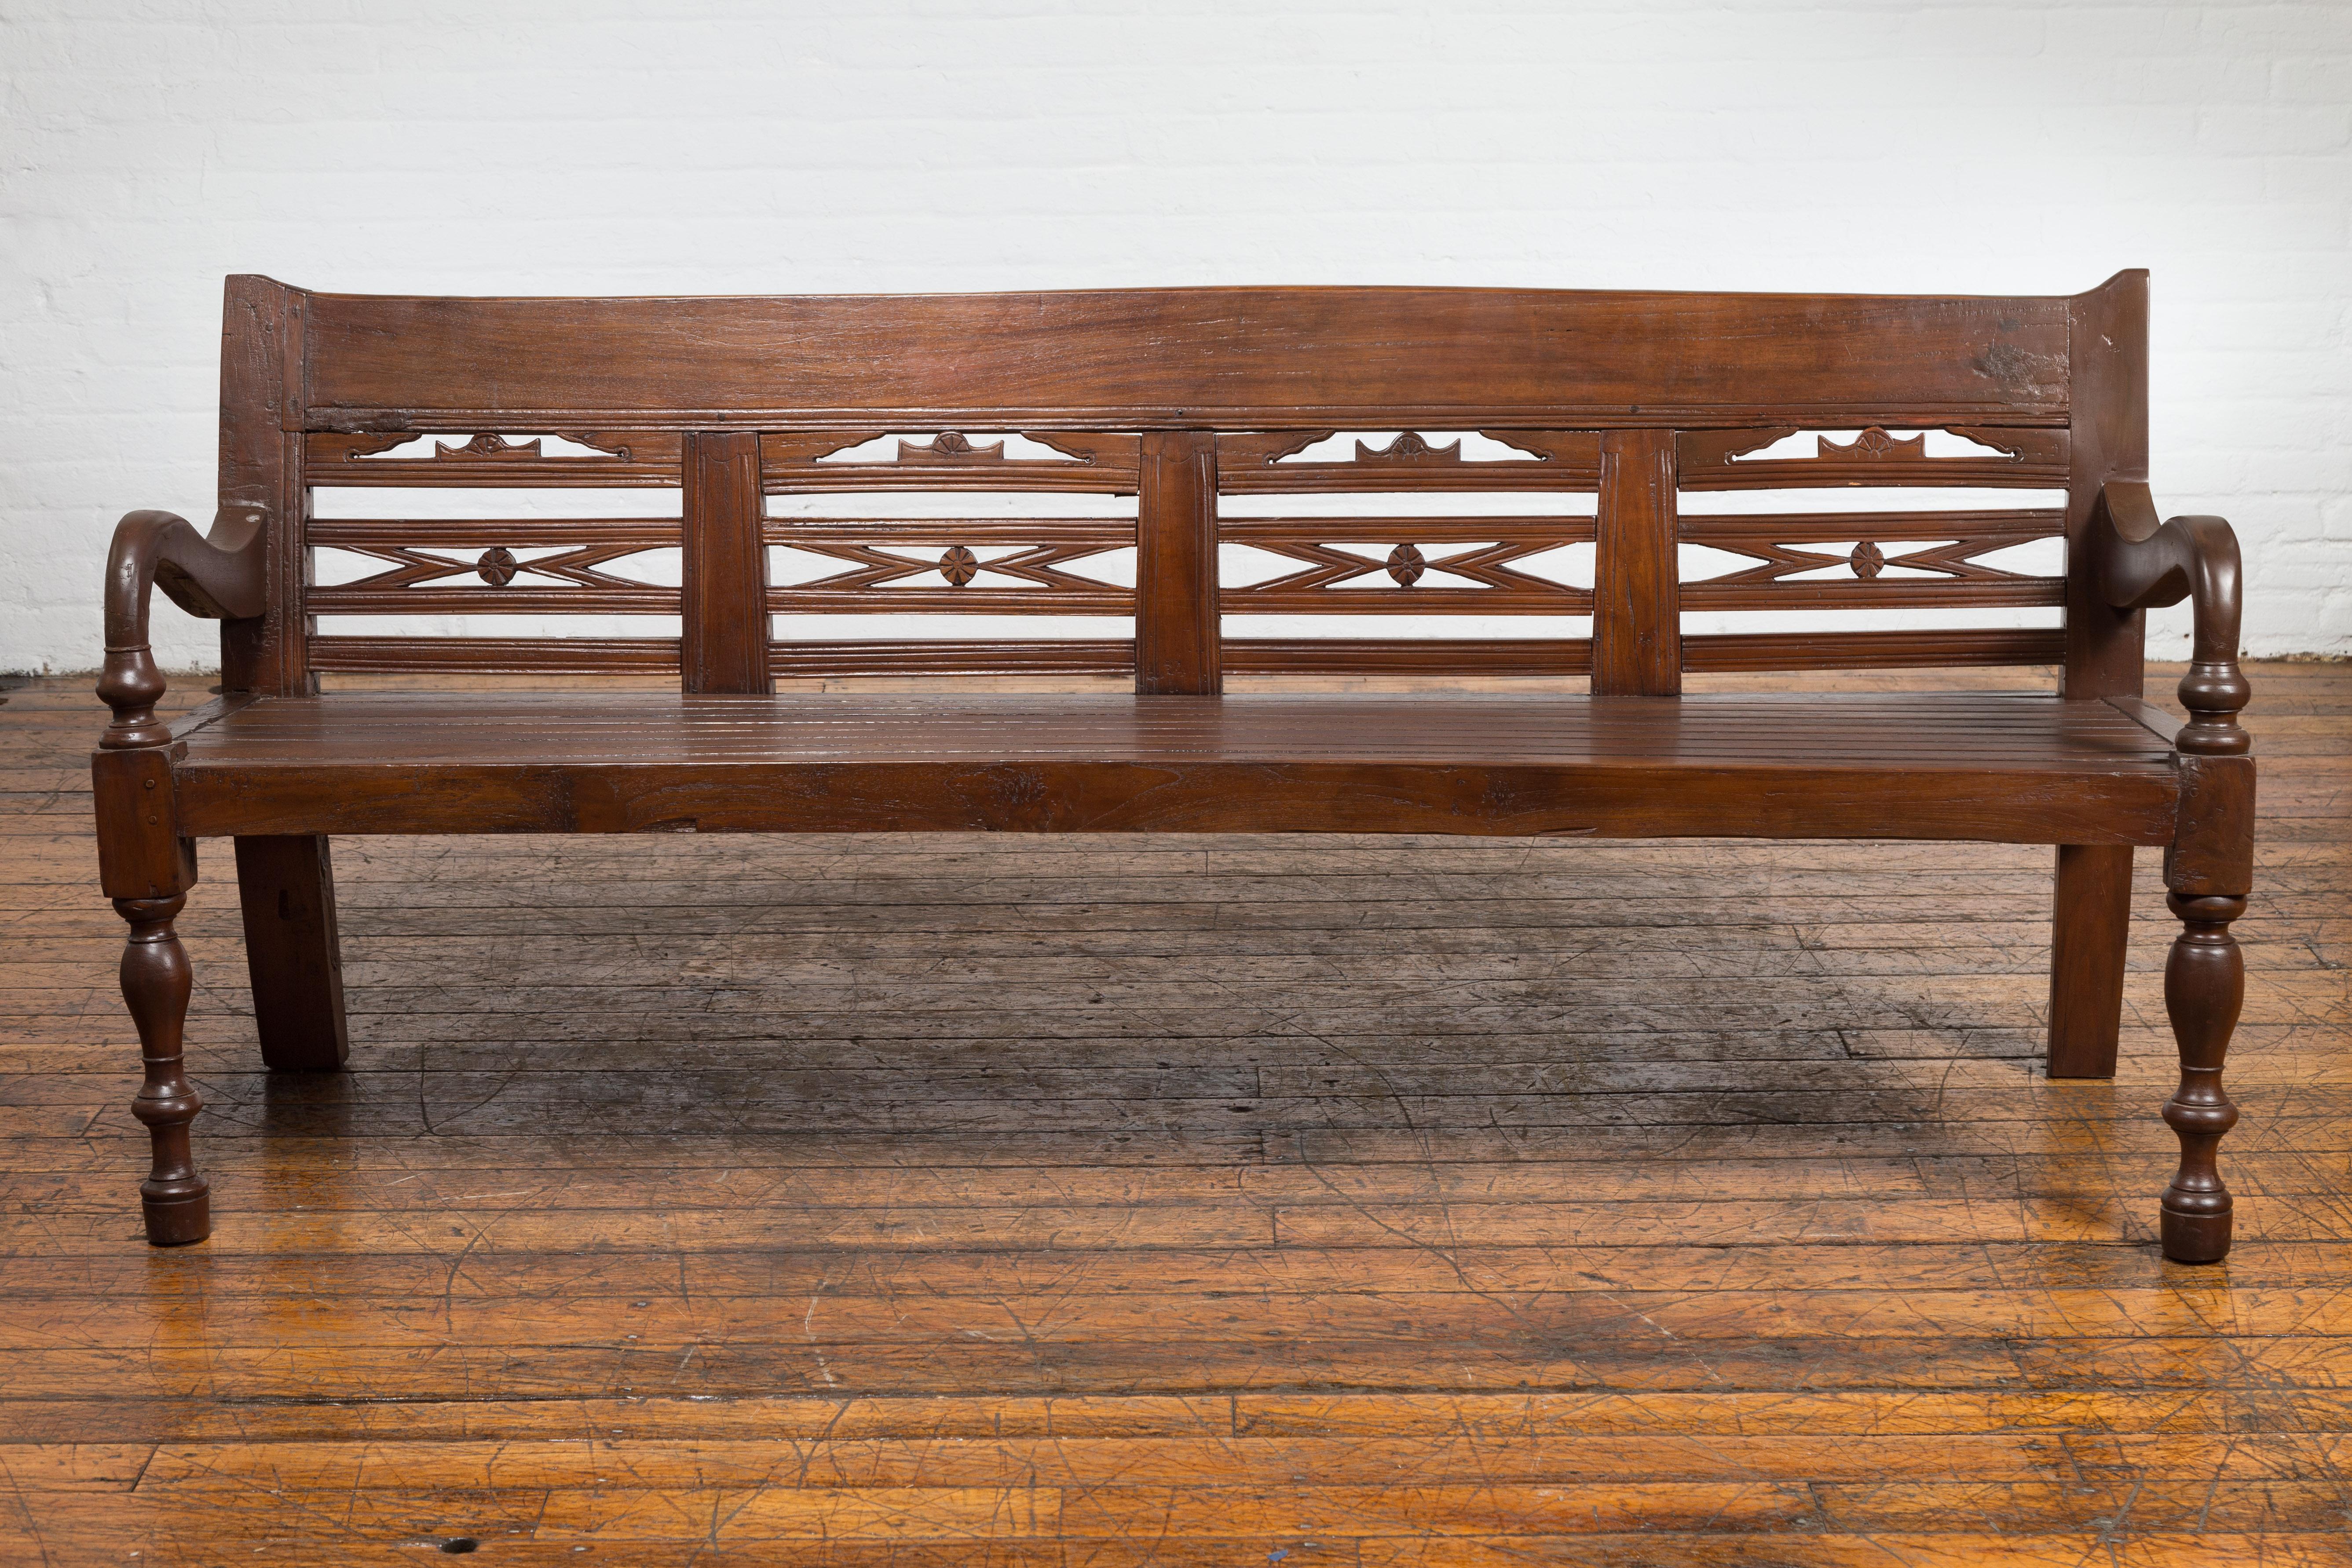 Ein antikes javanisches Teakholz-Sofa aus der Zeit um 1900 mit handgeschnitzter Rückenlehne, geschwungenen Armen und Balusterbeinen. Dieses antike javanische Sofa aus der Zeit um 1900 ist ein beeindruckendes Möbelstück aus Teakholz, das für seine